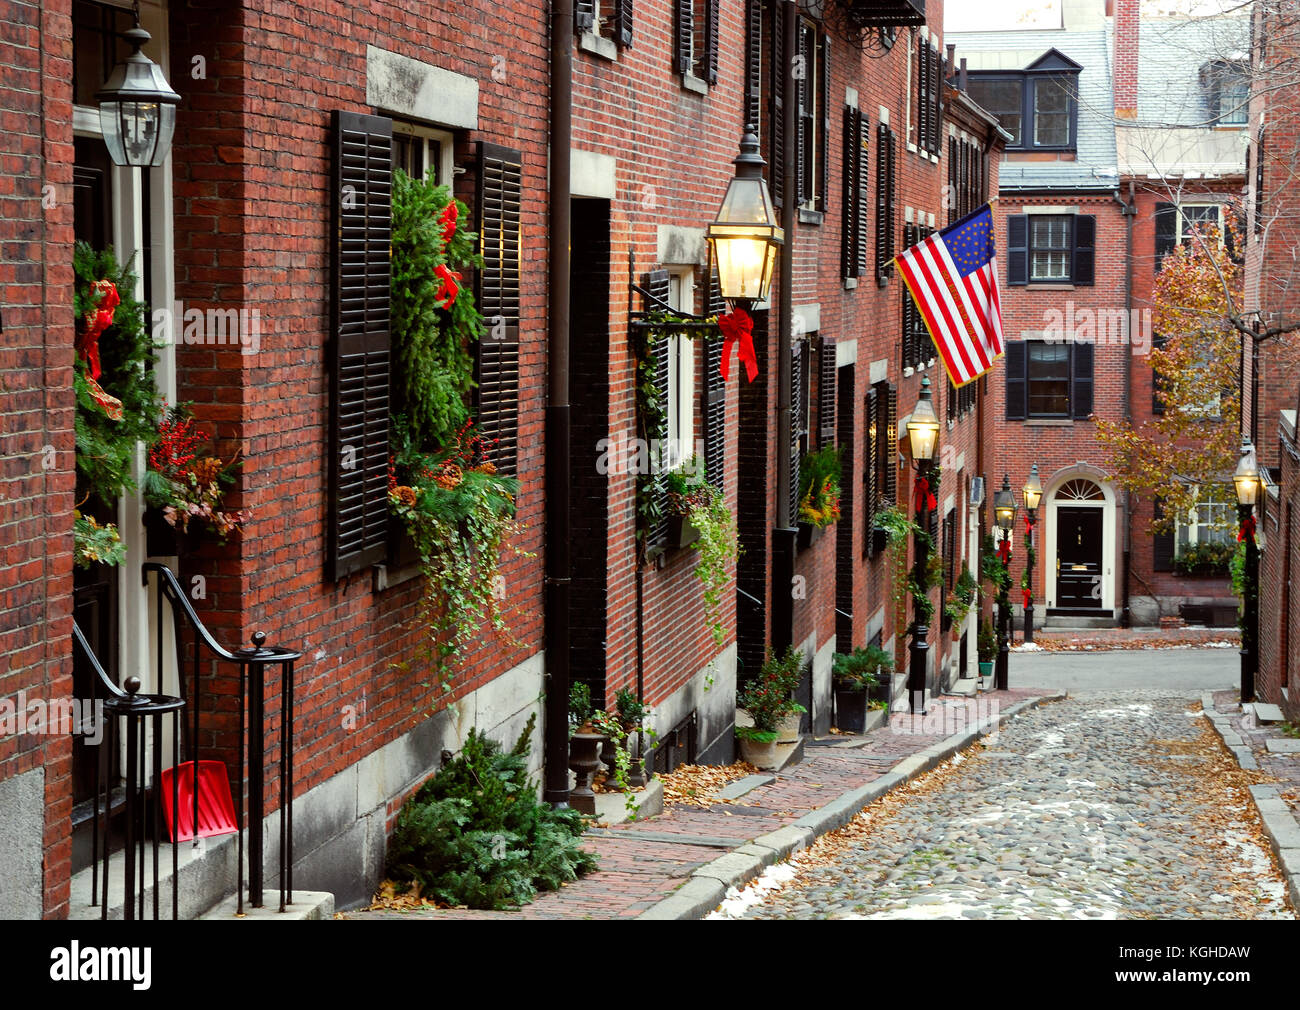 Storica acorn street in Beacon Hill, Boston. le decorazioni di Natale, la storica bandiera americana, ciottoli lastricatori, lampade stradali. Foto Stock